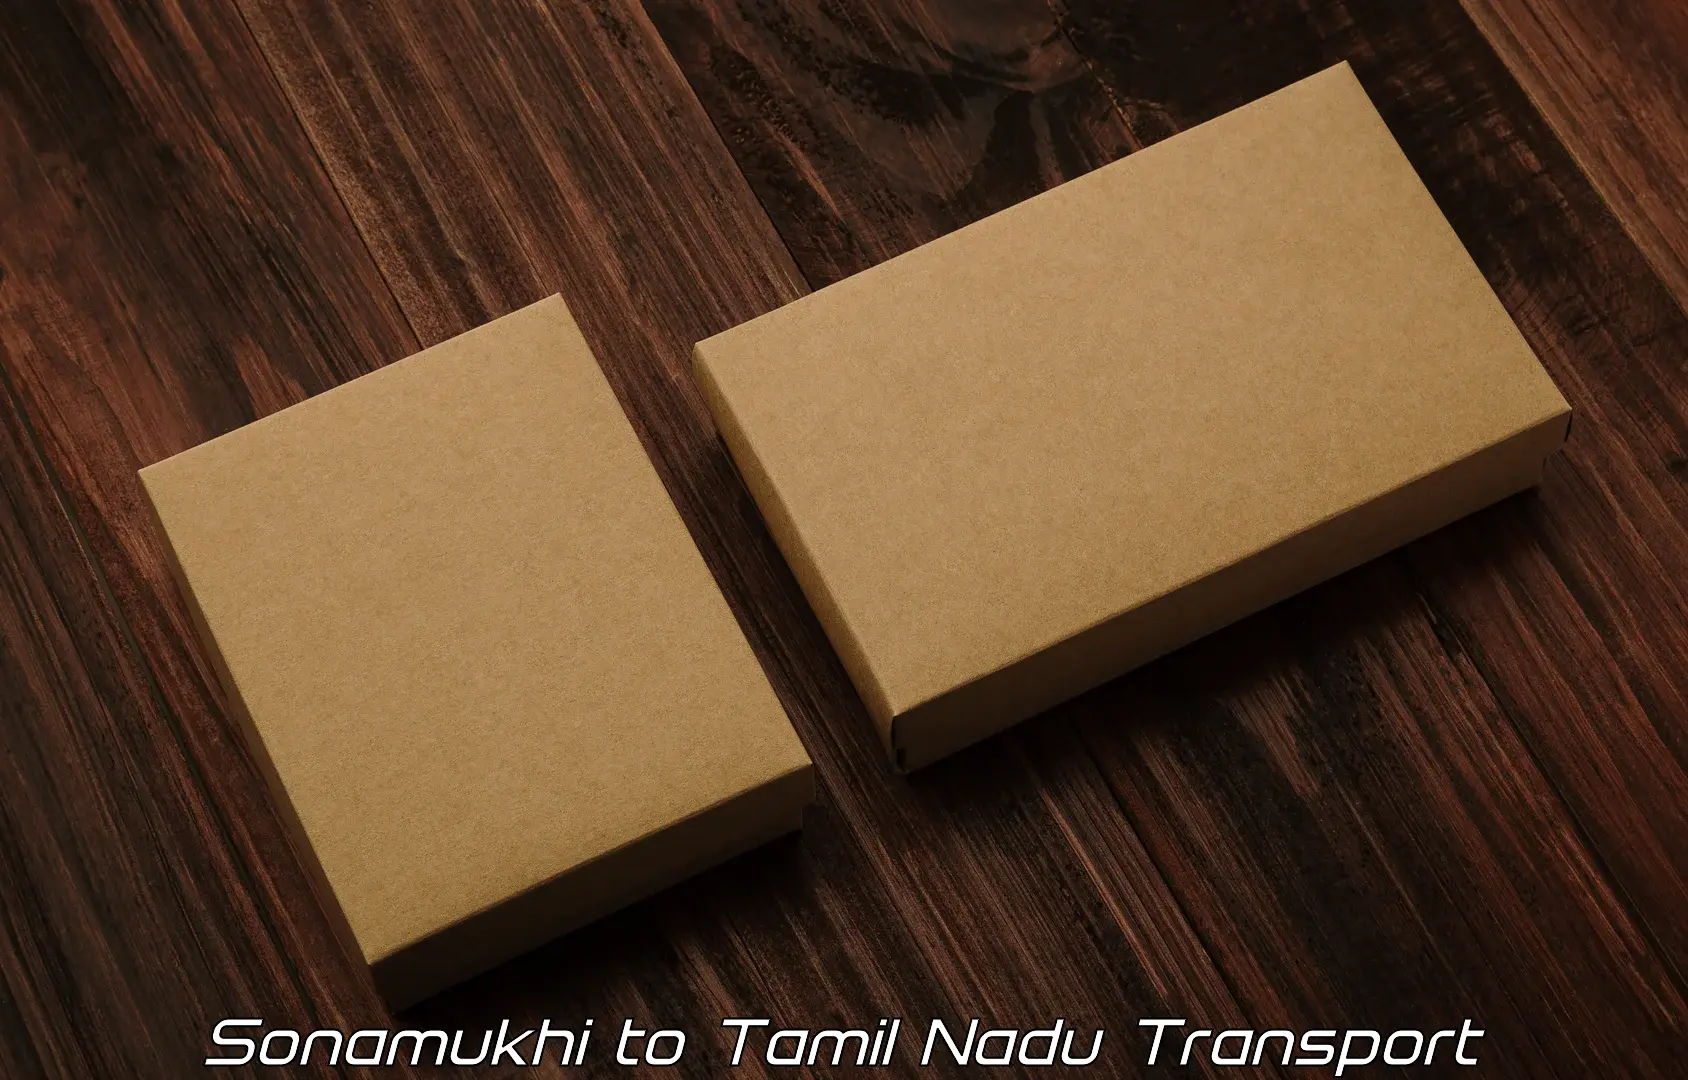 Vehicle parcel service Sonamukhi to Gudiyattam